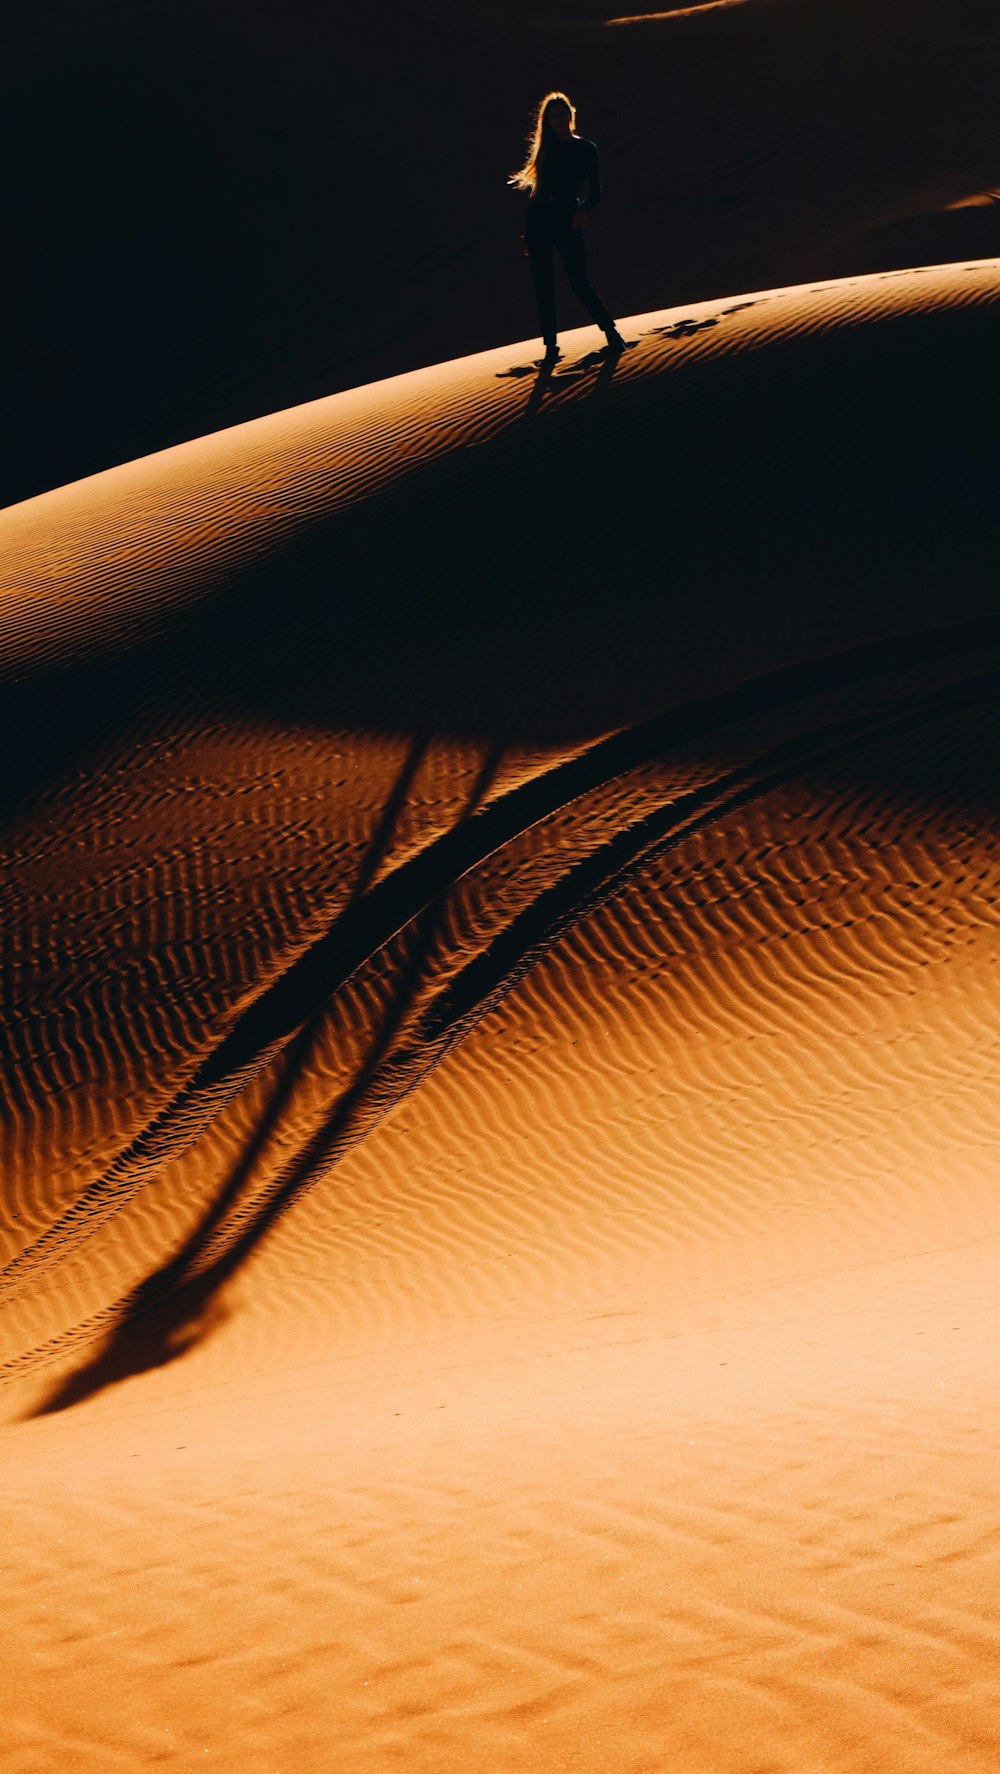 femme marchant sur le désert